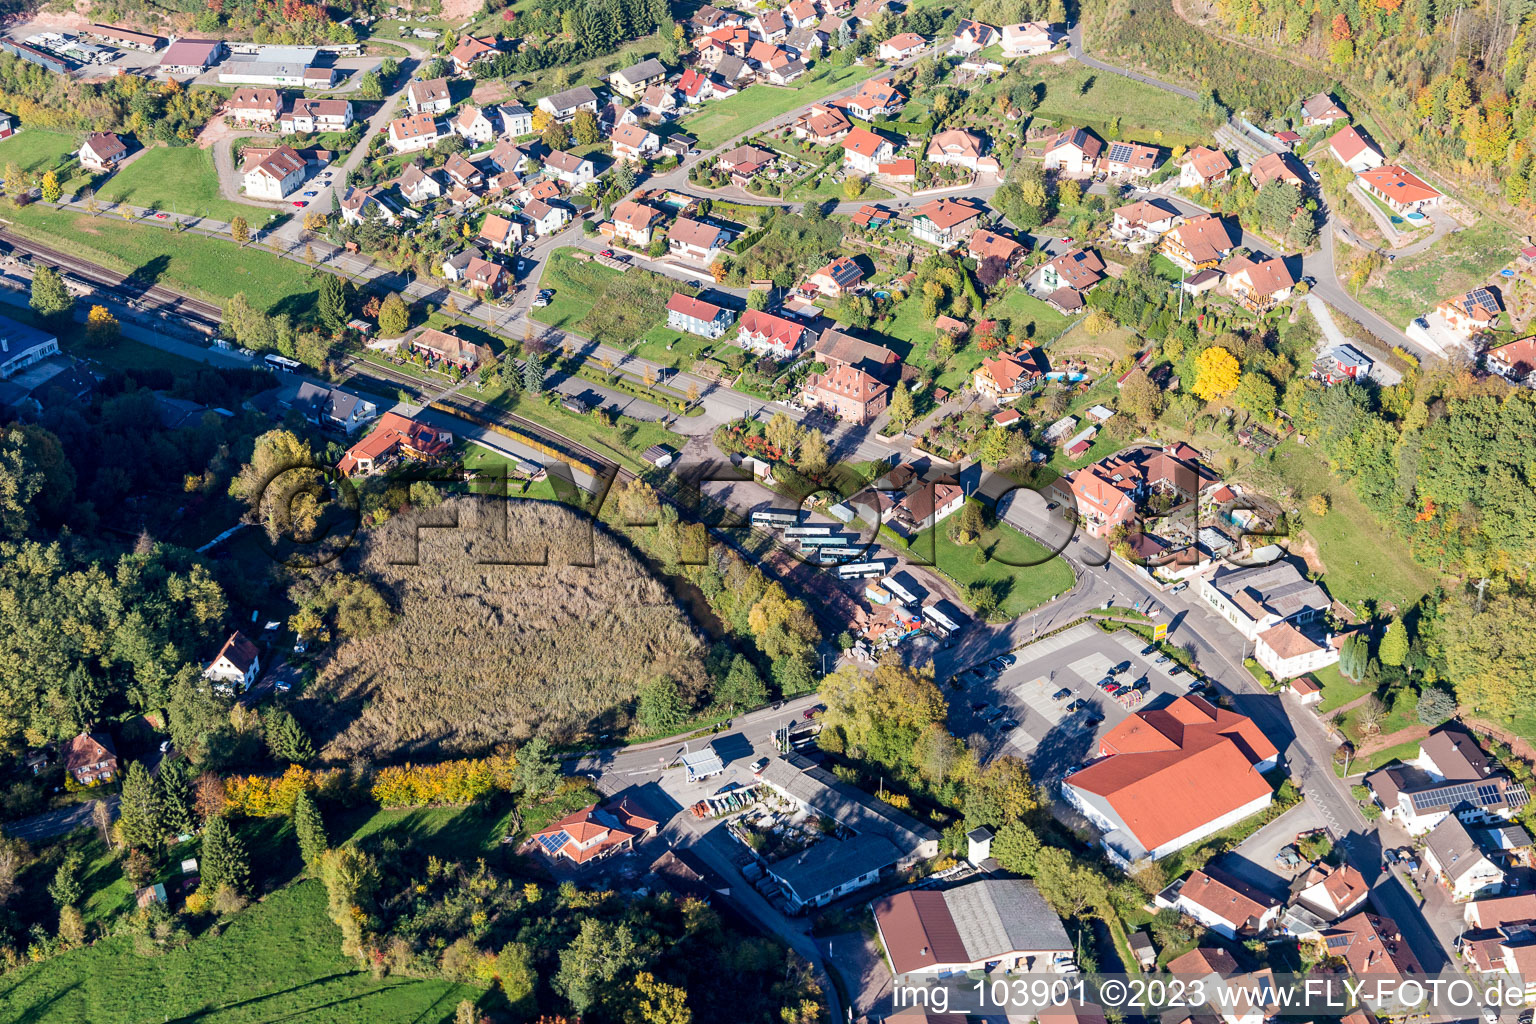 Bundenthal dans le département Rhénanie-Palatinat, Allemagne vue d'en haut